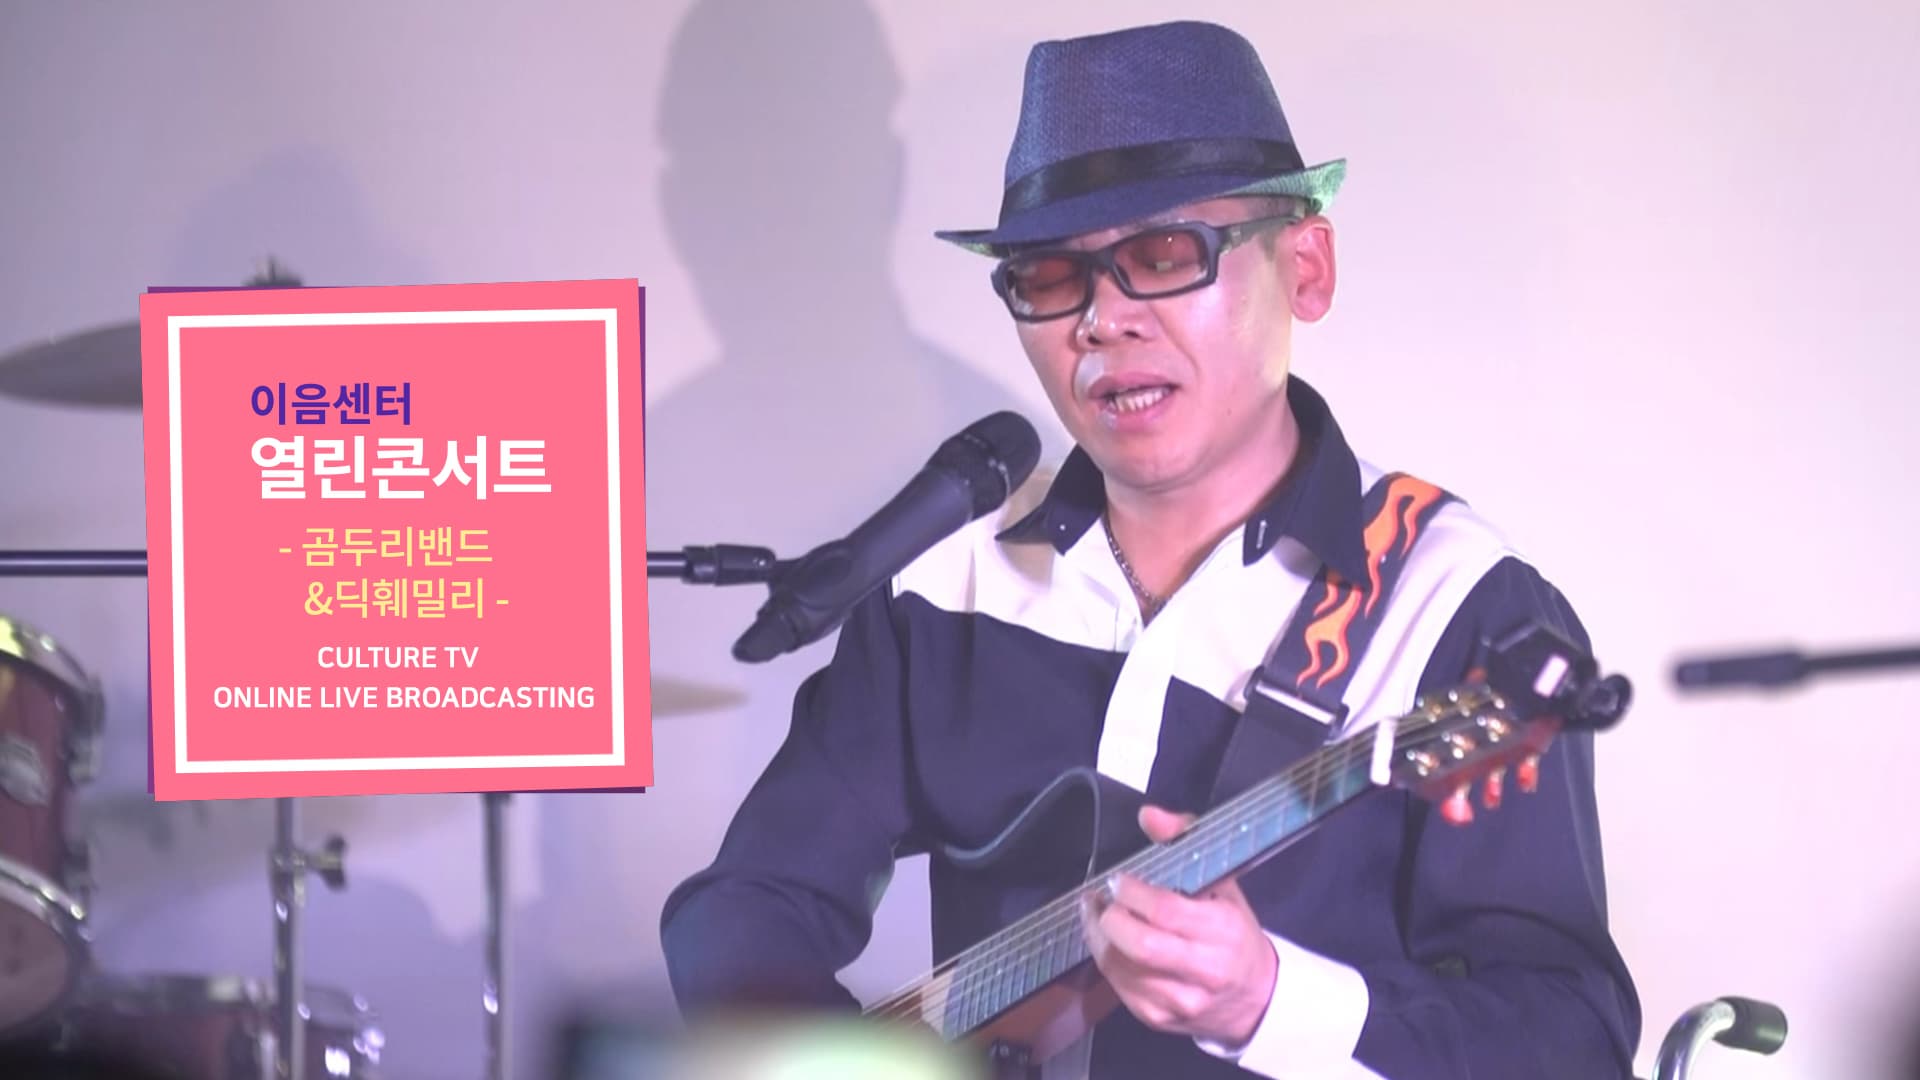 [문화TV] 이음센터 열린콘서트 '선물' - 곰두리밴드, 딕훼밀리, 박마루